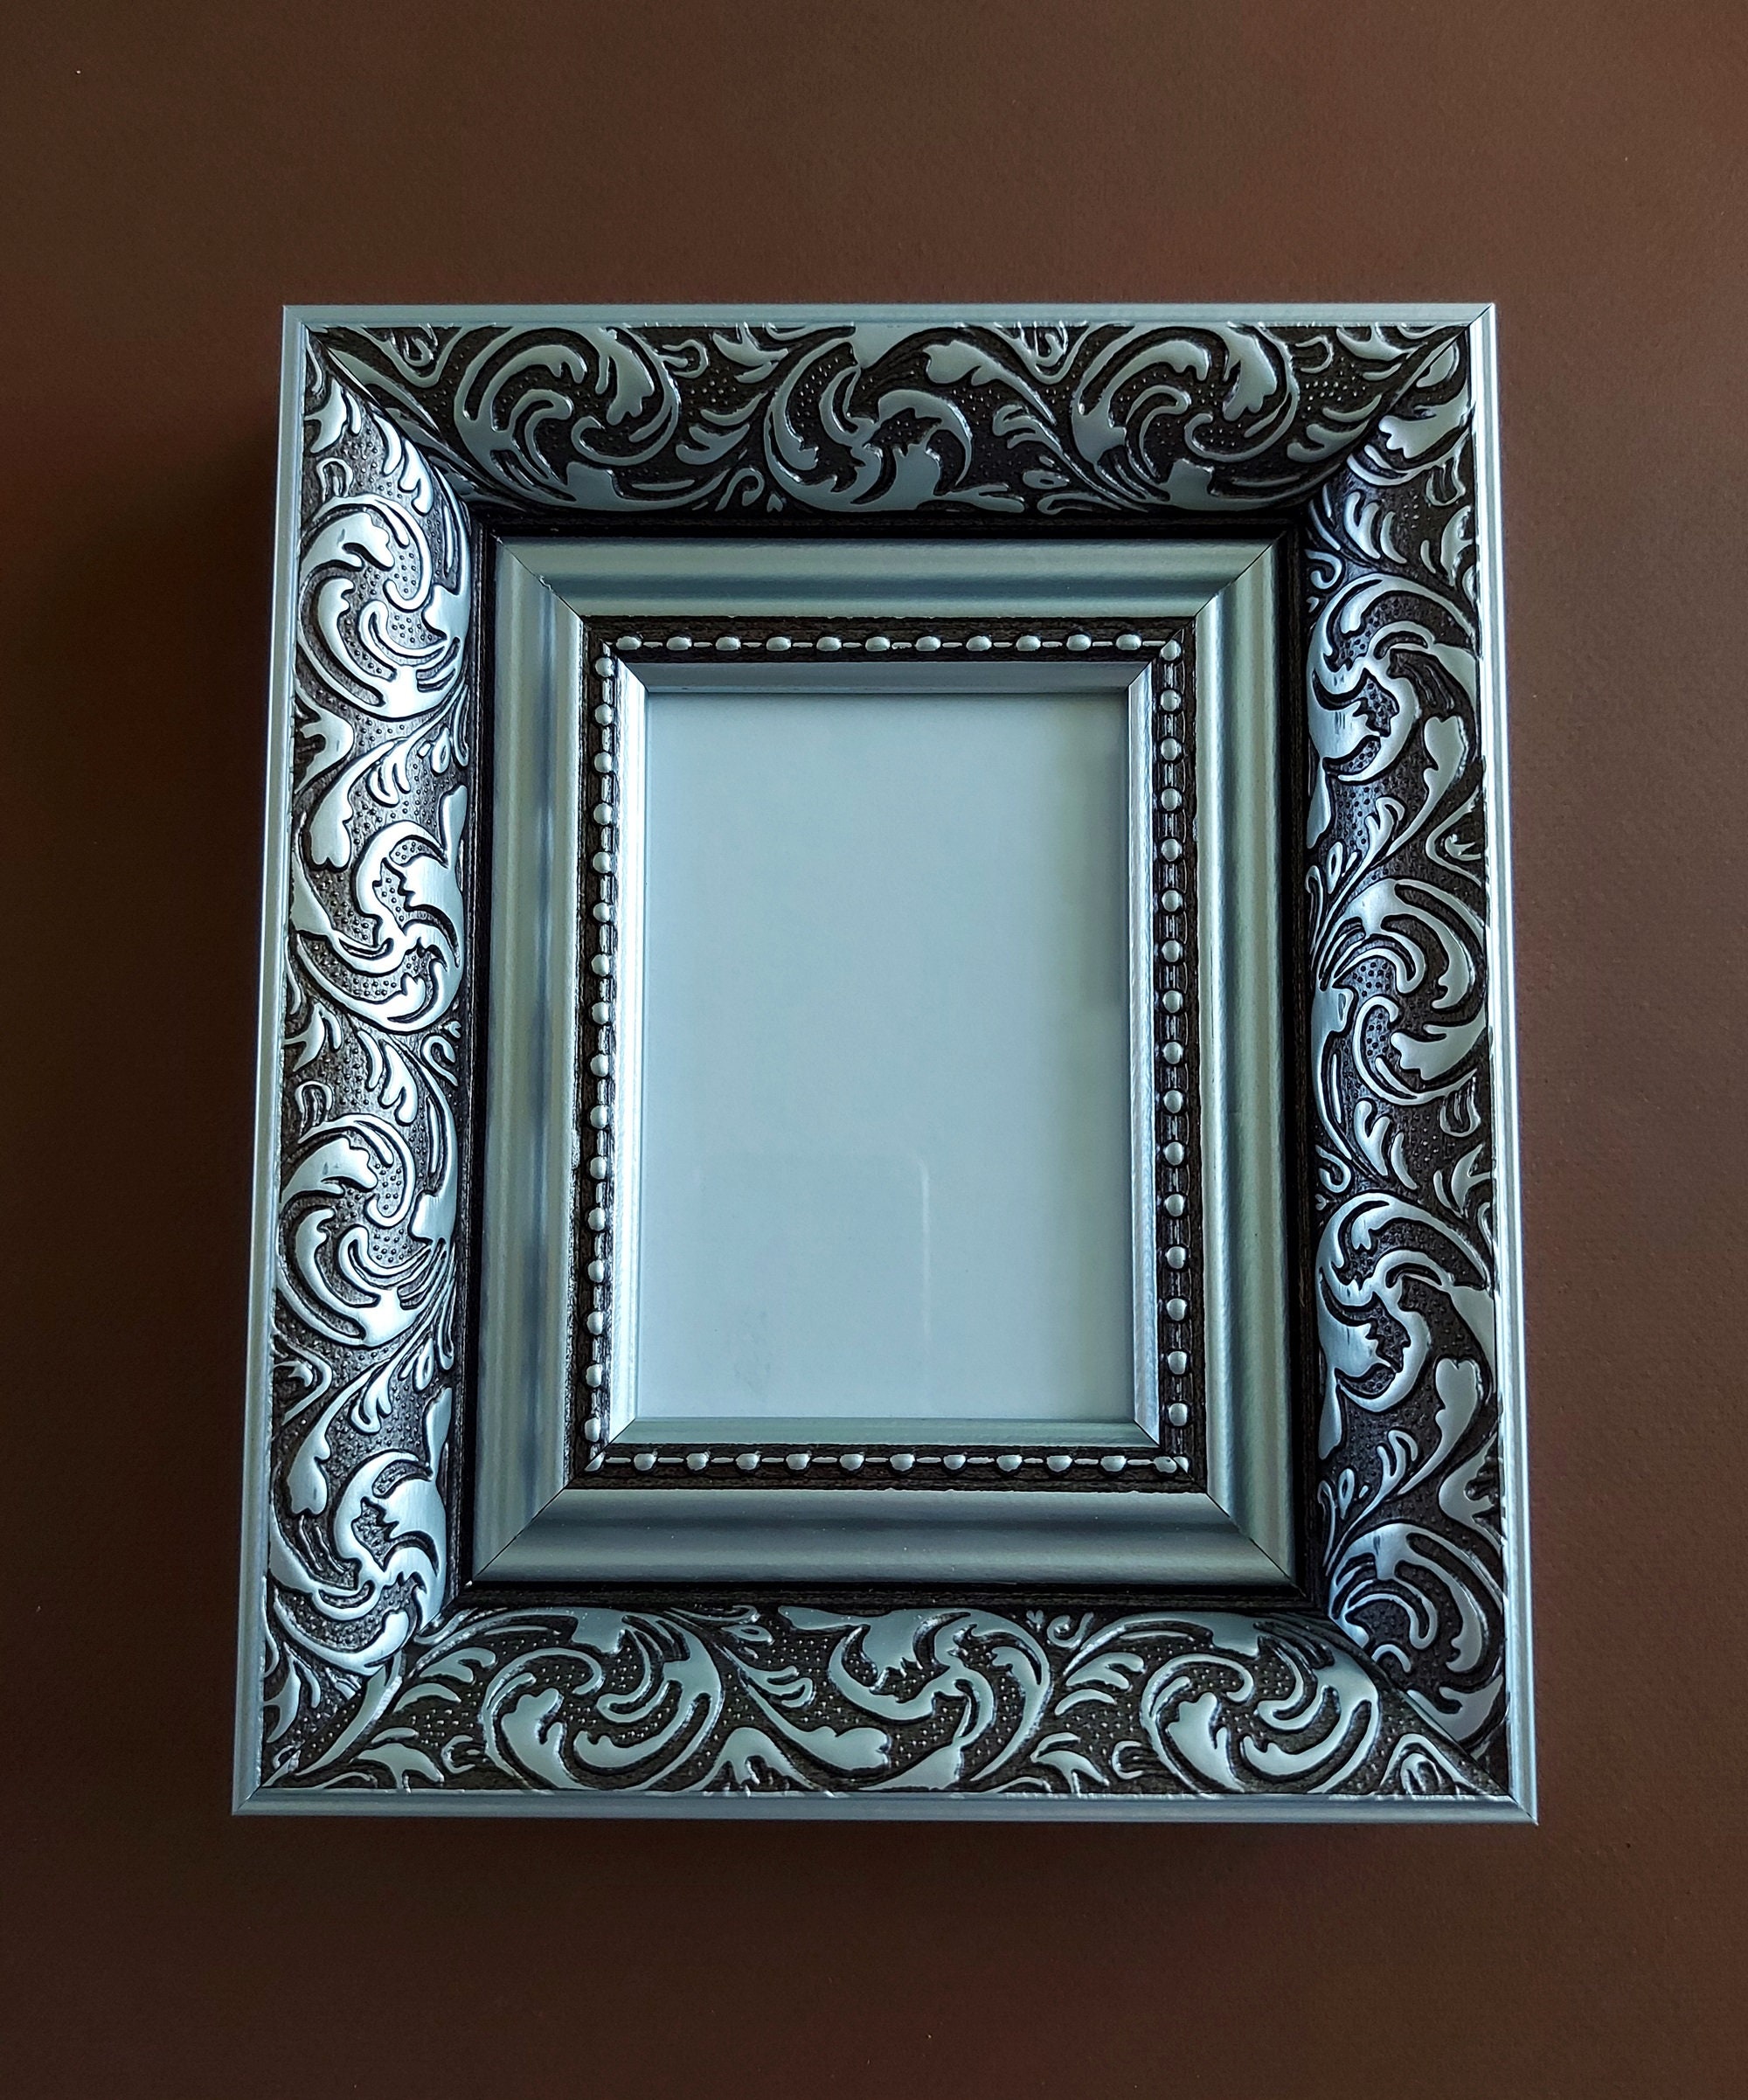 Marco portafoto de plata 20x30 cm fotografía bilaminada